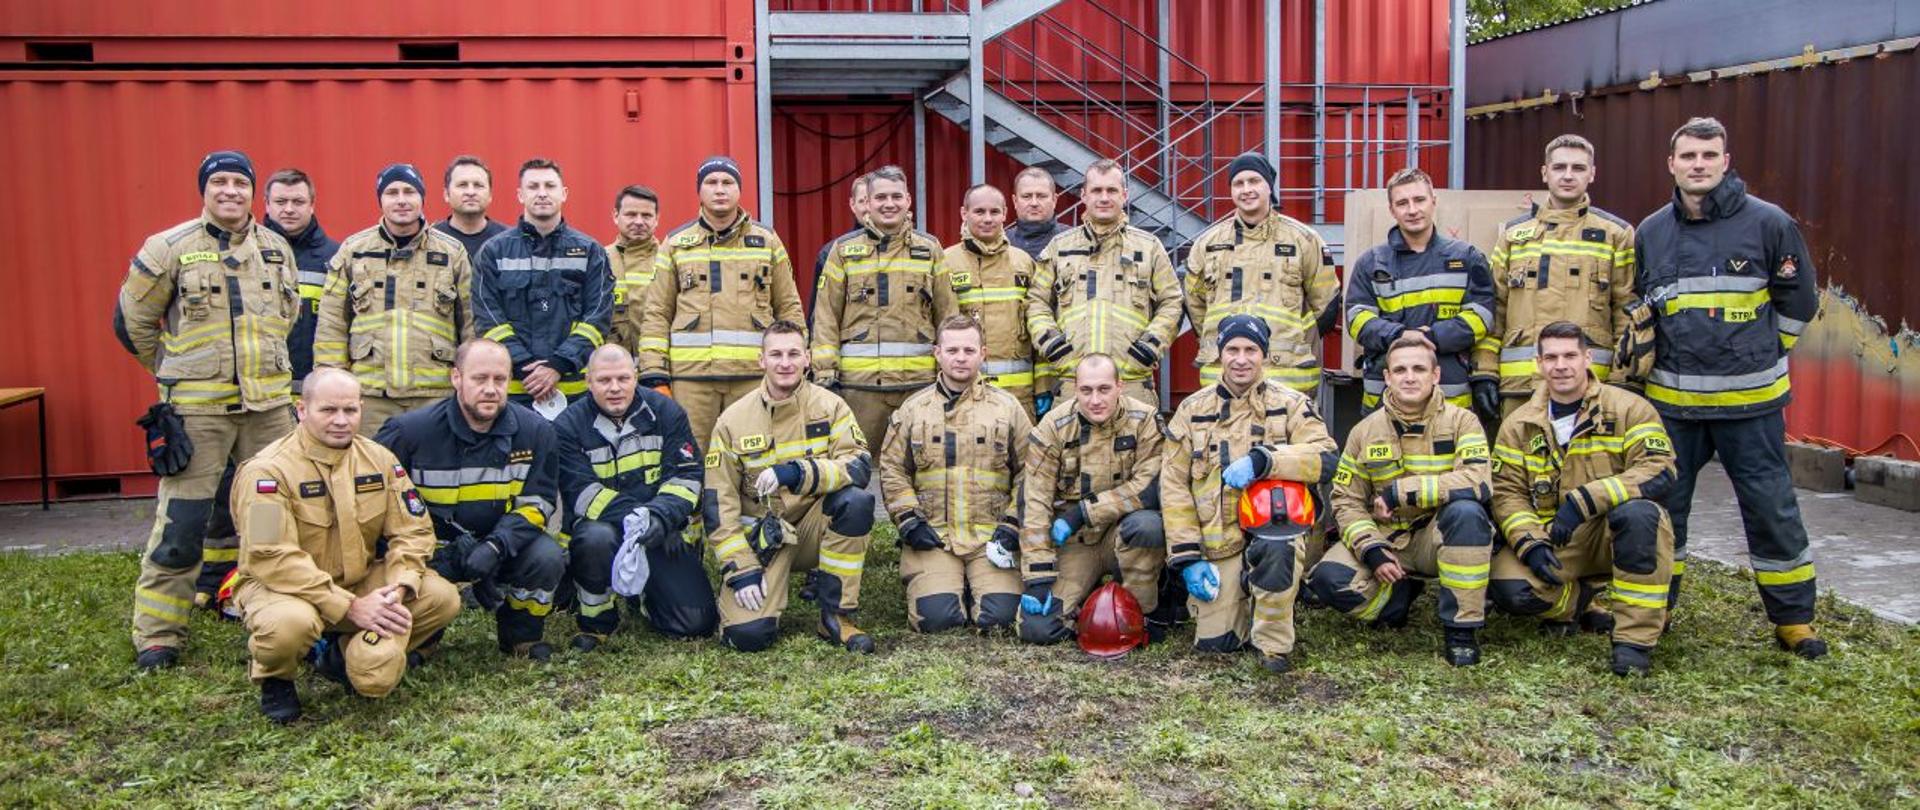 Strażacy podczas części praktycznej szkolenia z zakresu gaszenia pożarów wewnętrznych - wspólne zdjęcie uczestników oraz instruktorów kursu